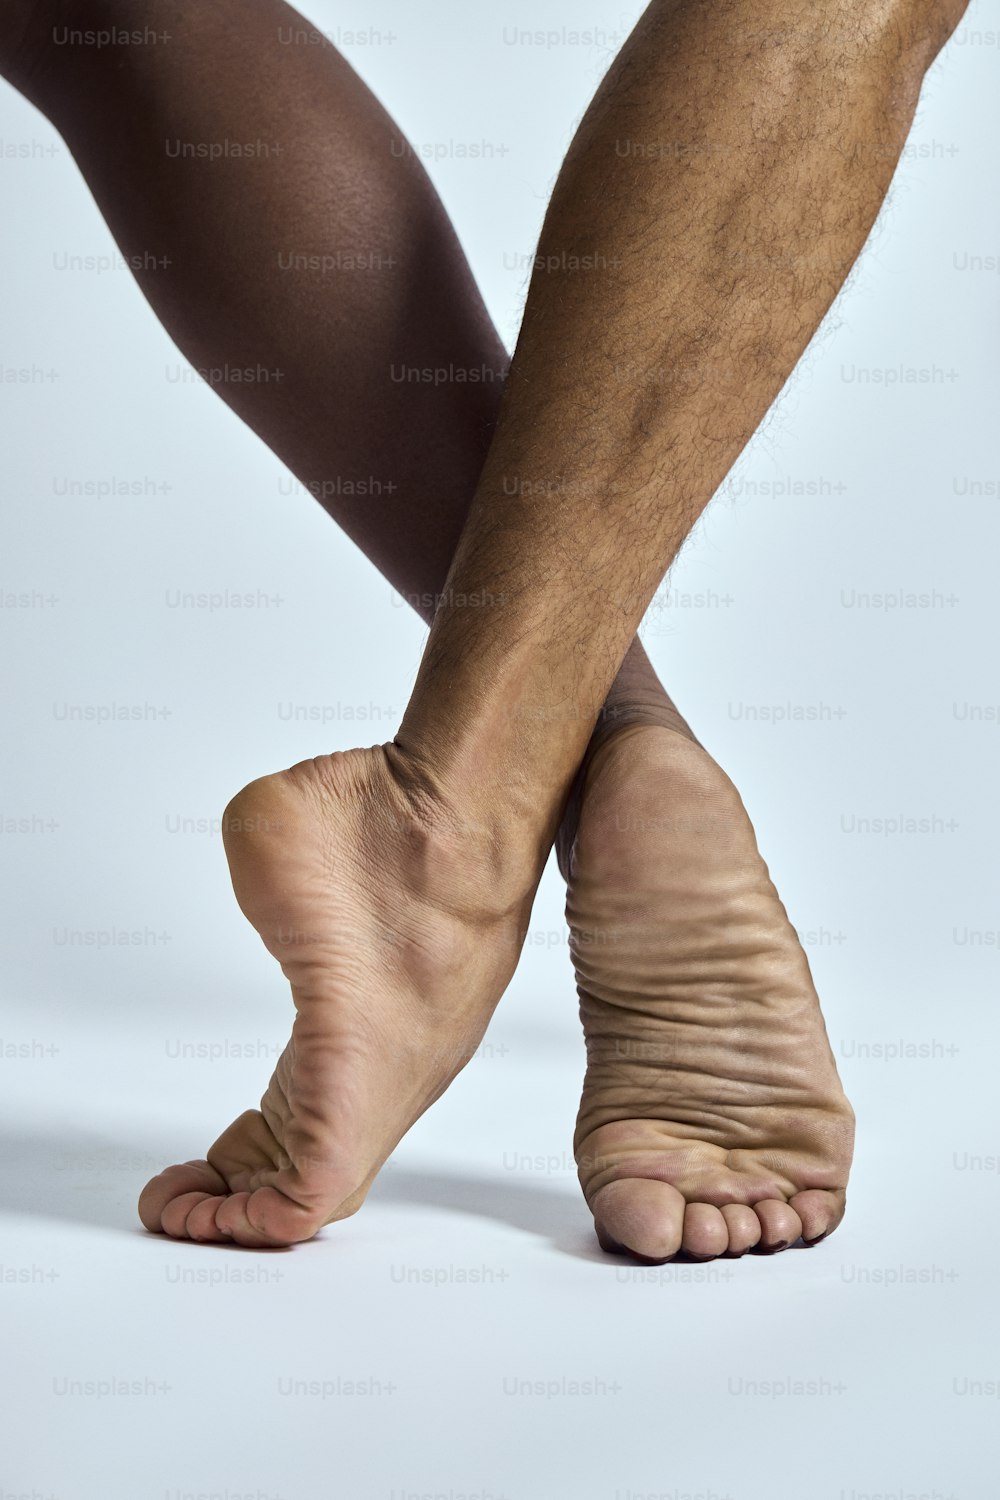 eine Nahaufnahme einer Person mit nackten Füßen